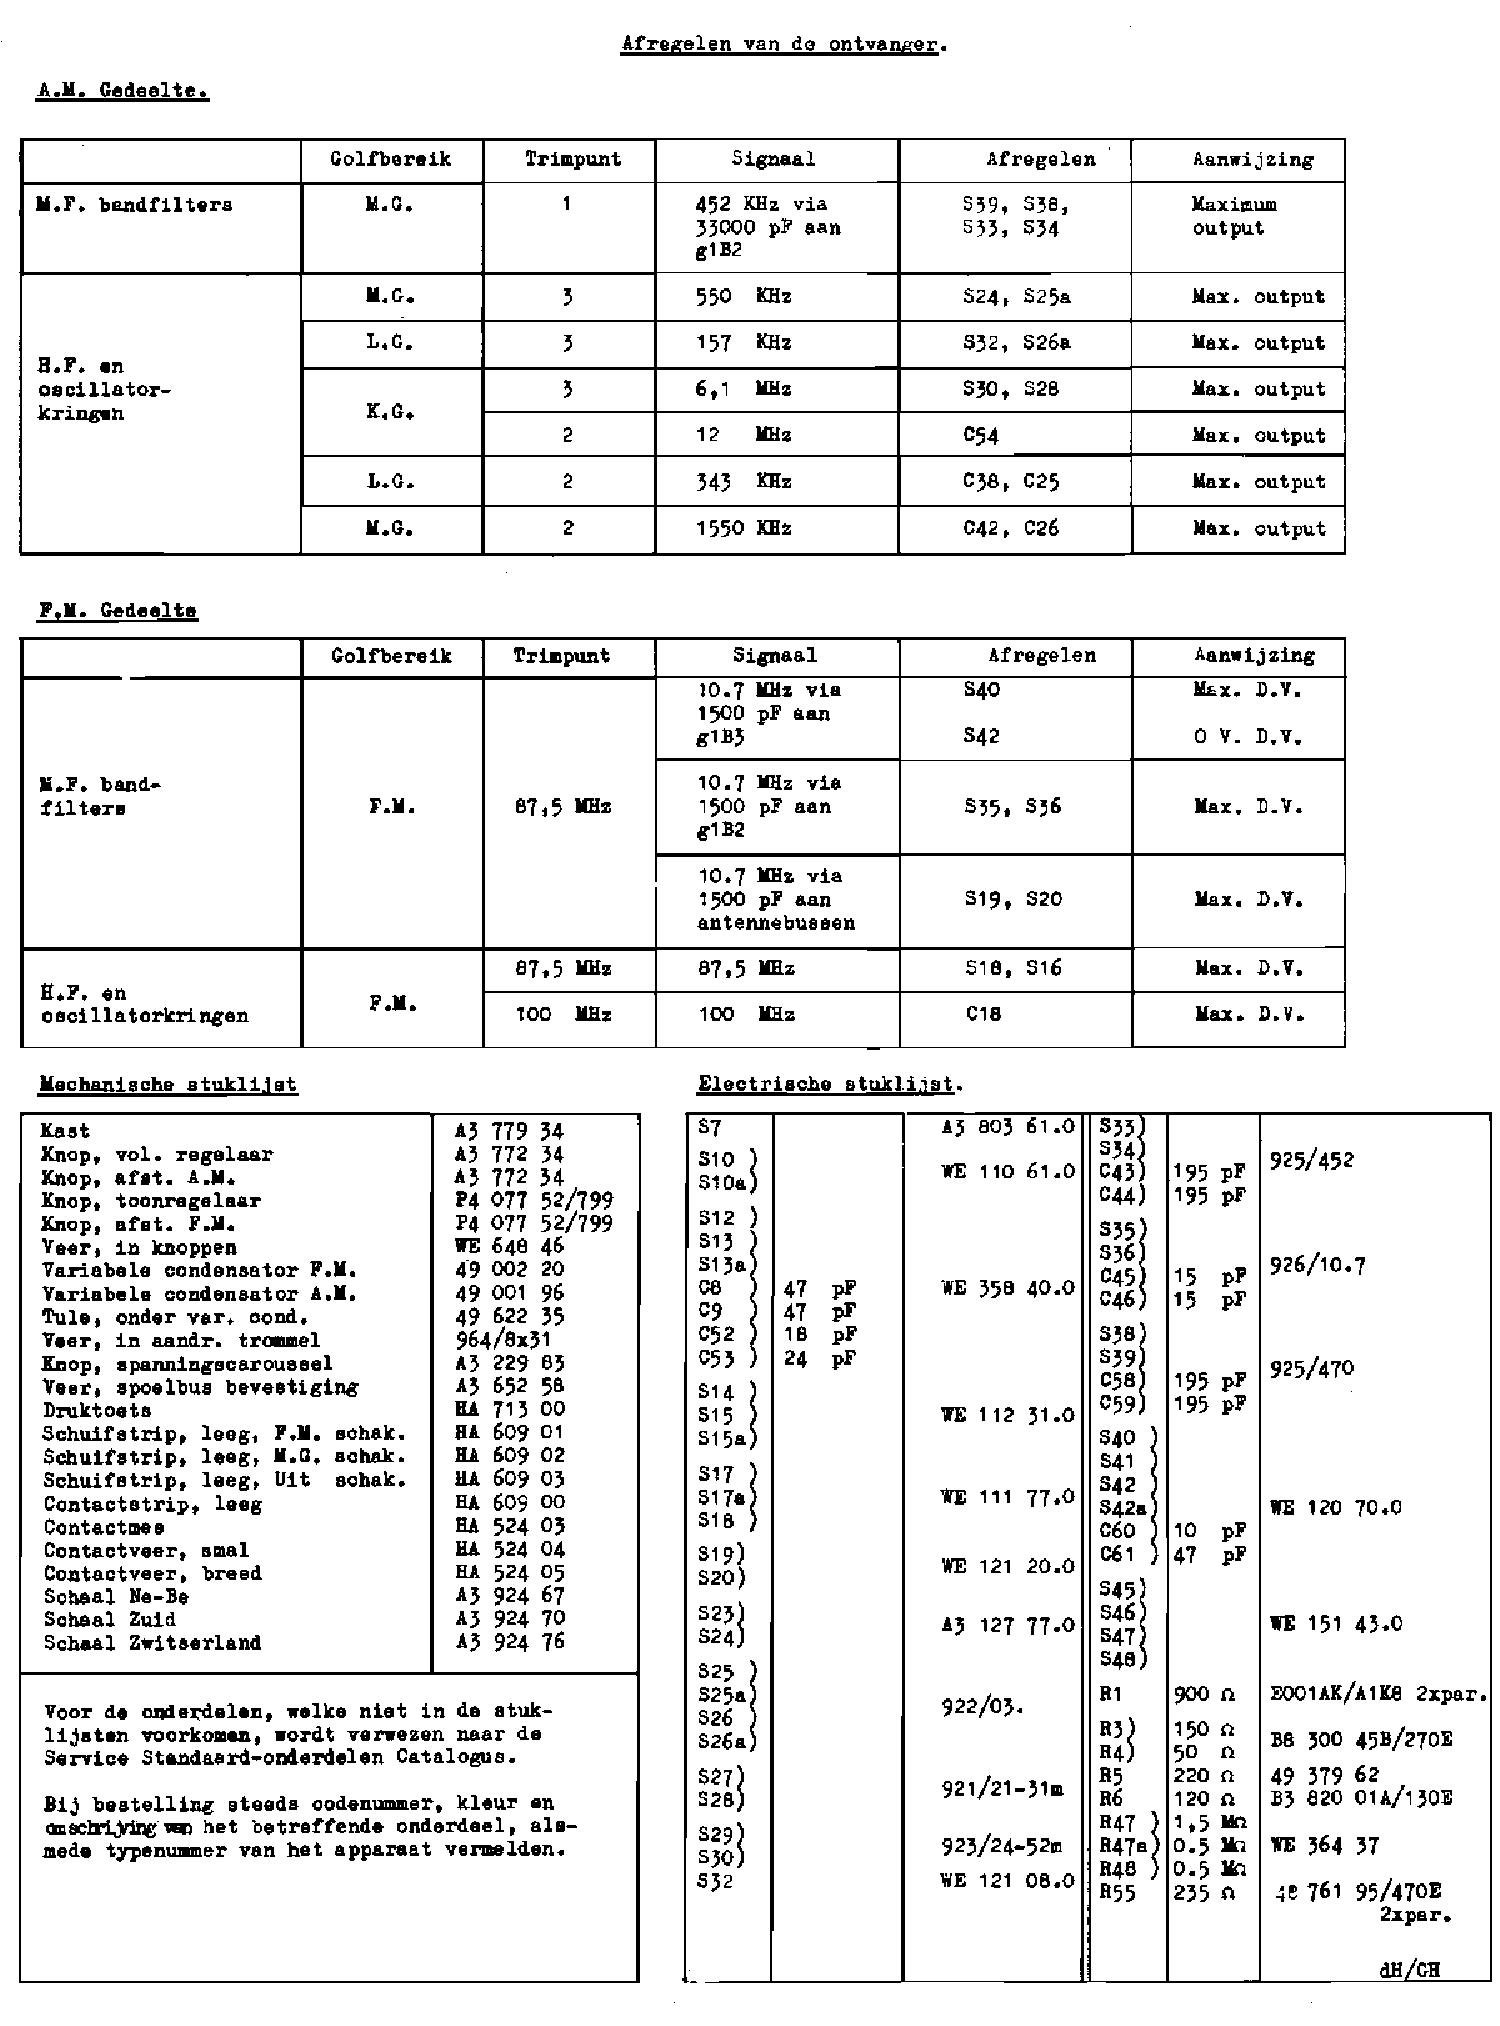 PHILIPS B3X82U-01-02 AM-FM AC-DC SUPER RECEIVER 1957 SM service manual (2nd page)